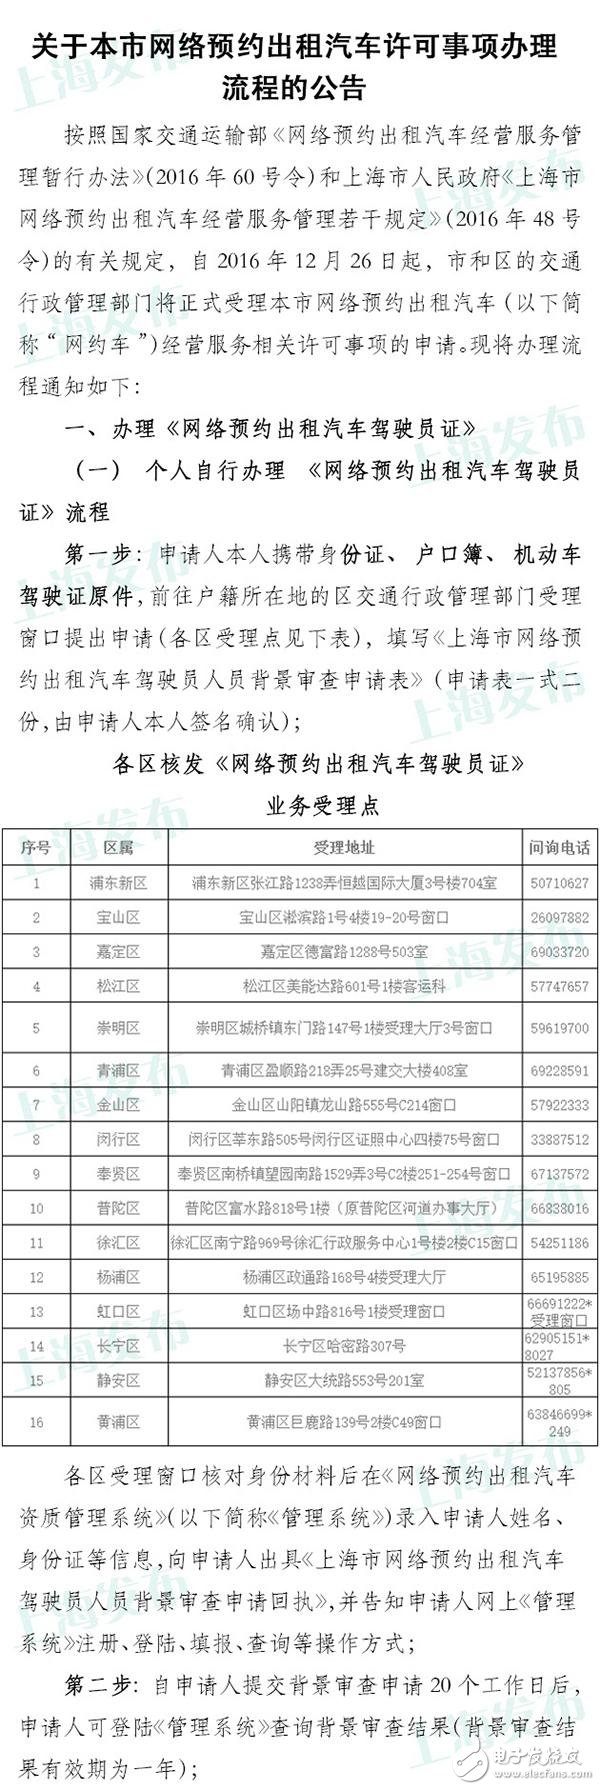 上海网约车申请今日已开放 具体流程公布无从业资格需考试,上海网约车申请今日已开放 具体流程公布无从业资格需考试,第2张